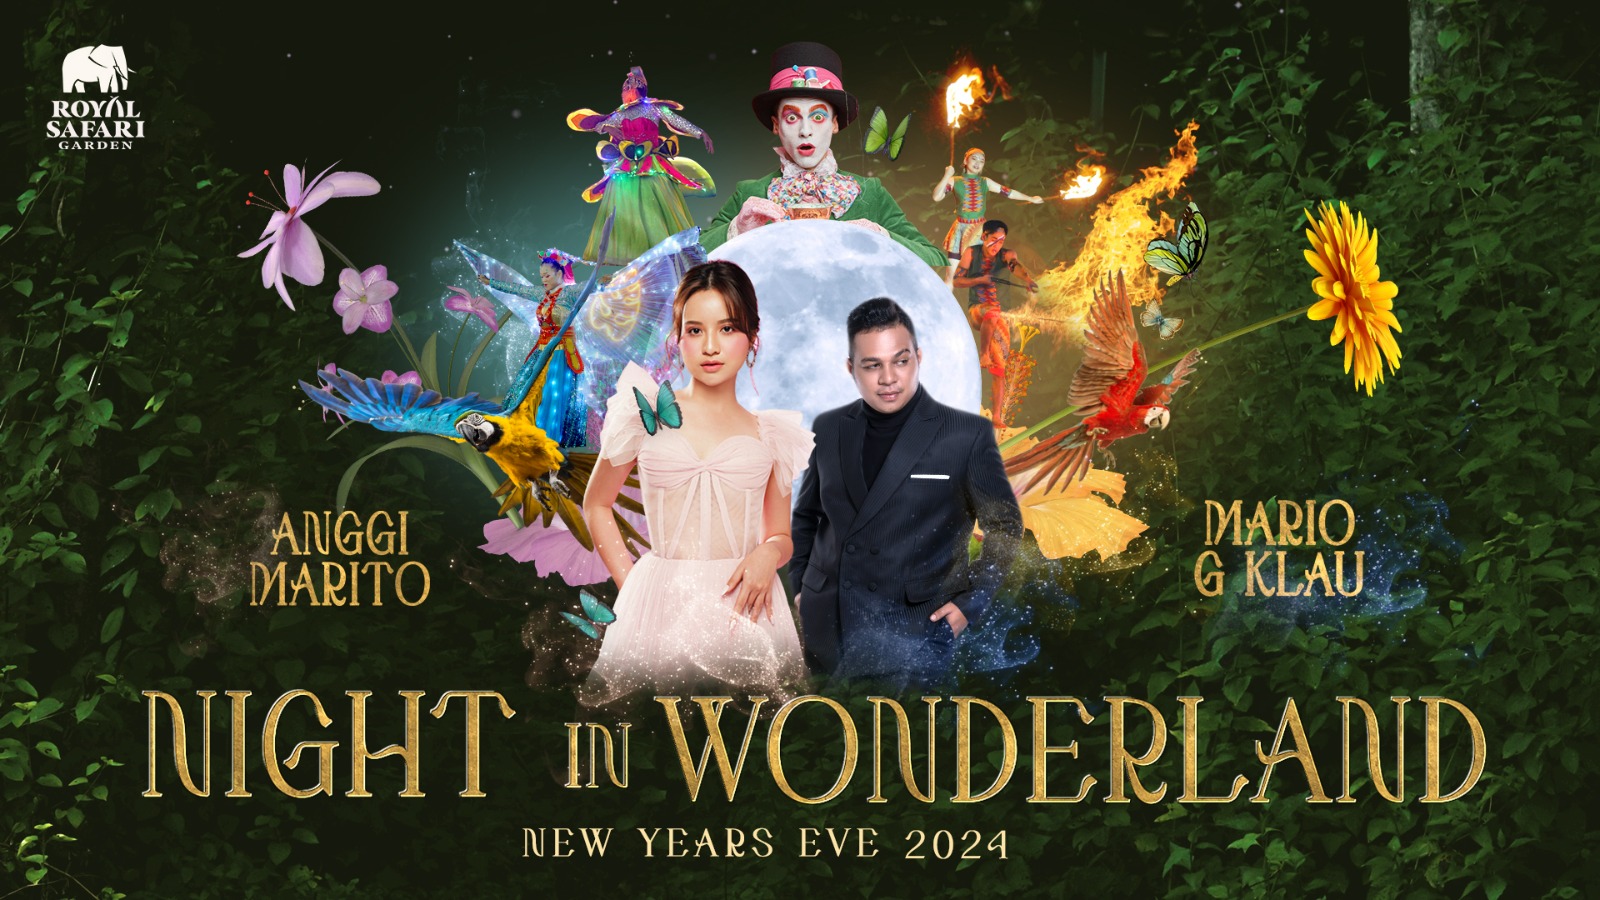 Yuk, Rayakan Malam Tahun Baru 2024 Bersama Anggi Marito & Mario G Klau di Royal Safari Garden